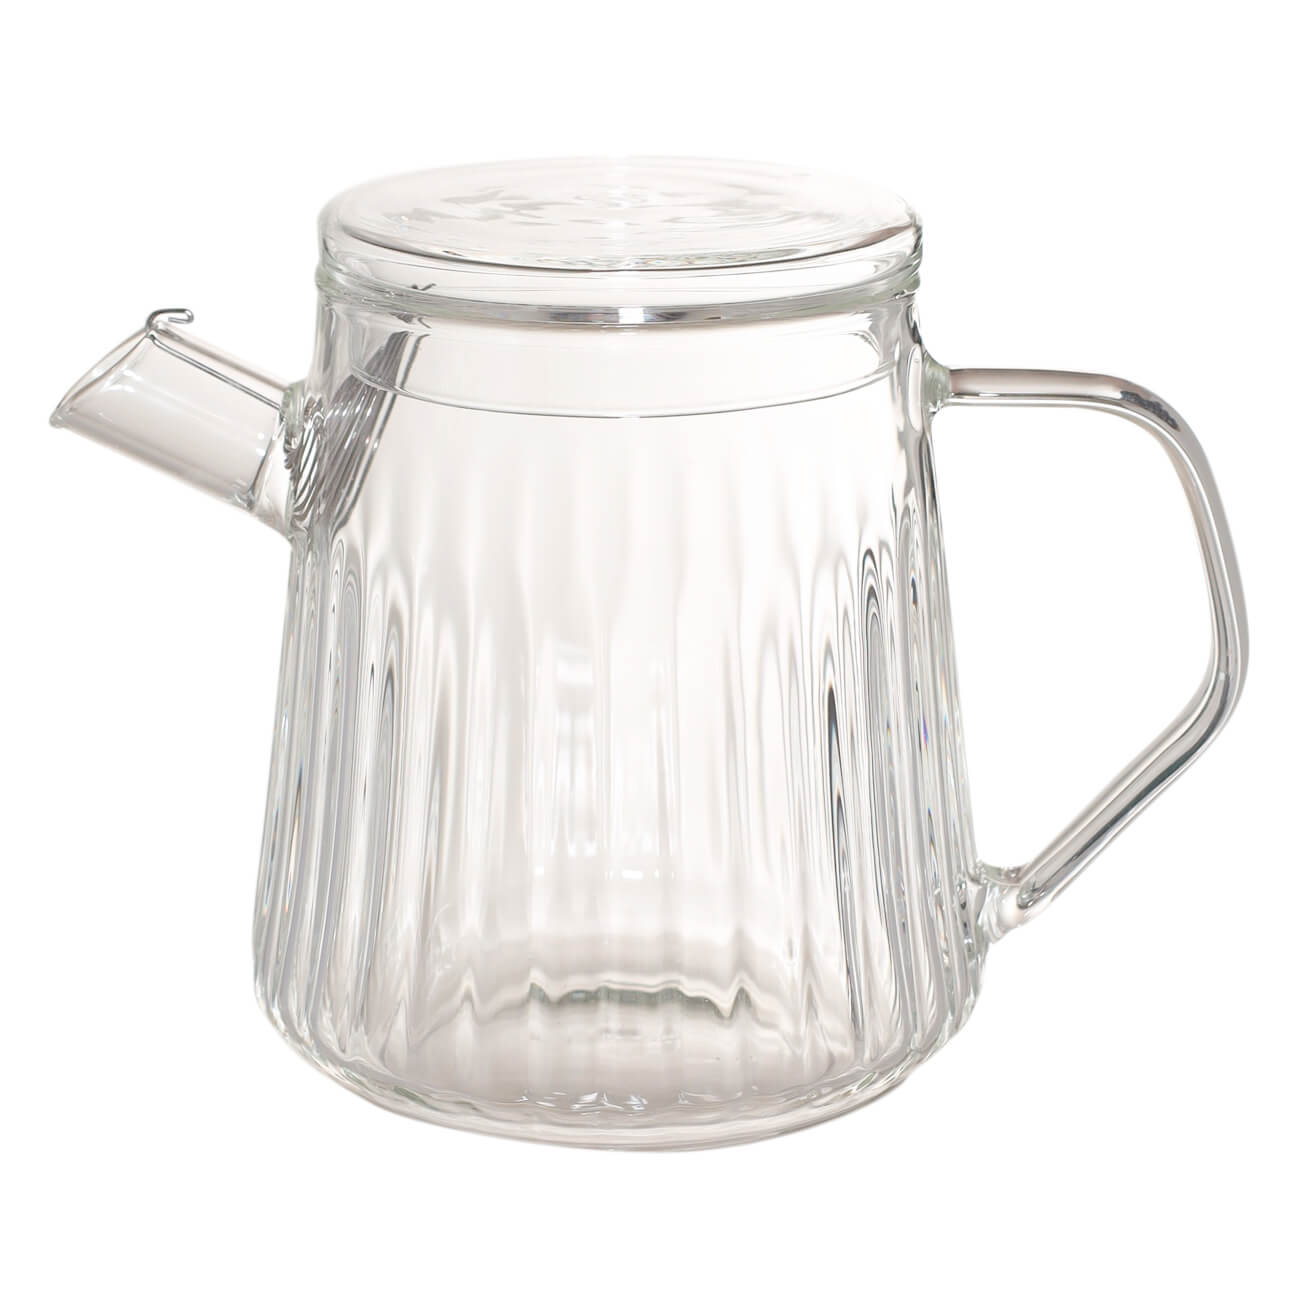 Чайник заварочный, 650 мл, стекло Б, Glacier kuchenland чайник заварочный 1 л стекло б macchiato